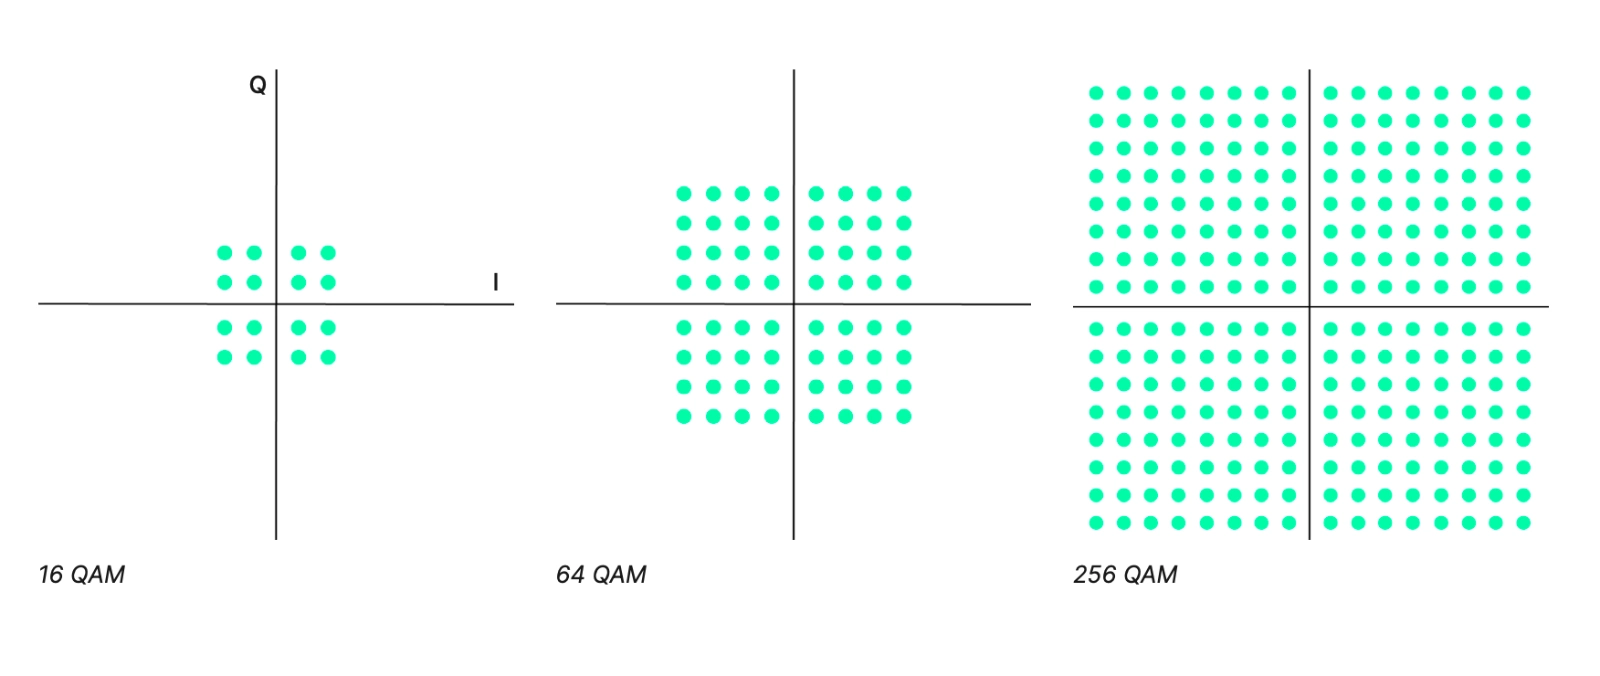 Examples of Quadrature Amplitude Modulation (QAM) constellation diagrams, 16 QAM, 64 QAM, and 256 QAM.